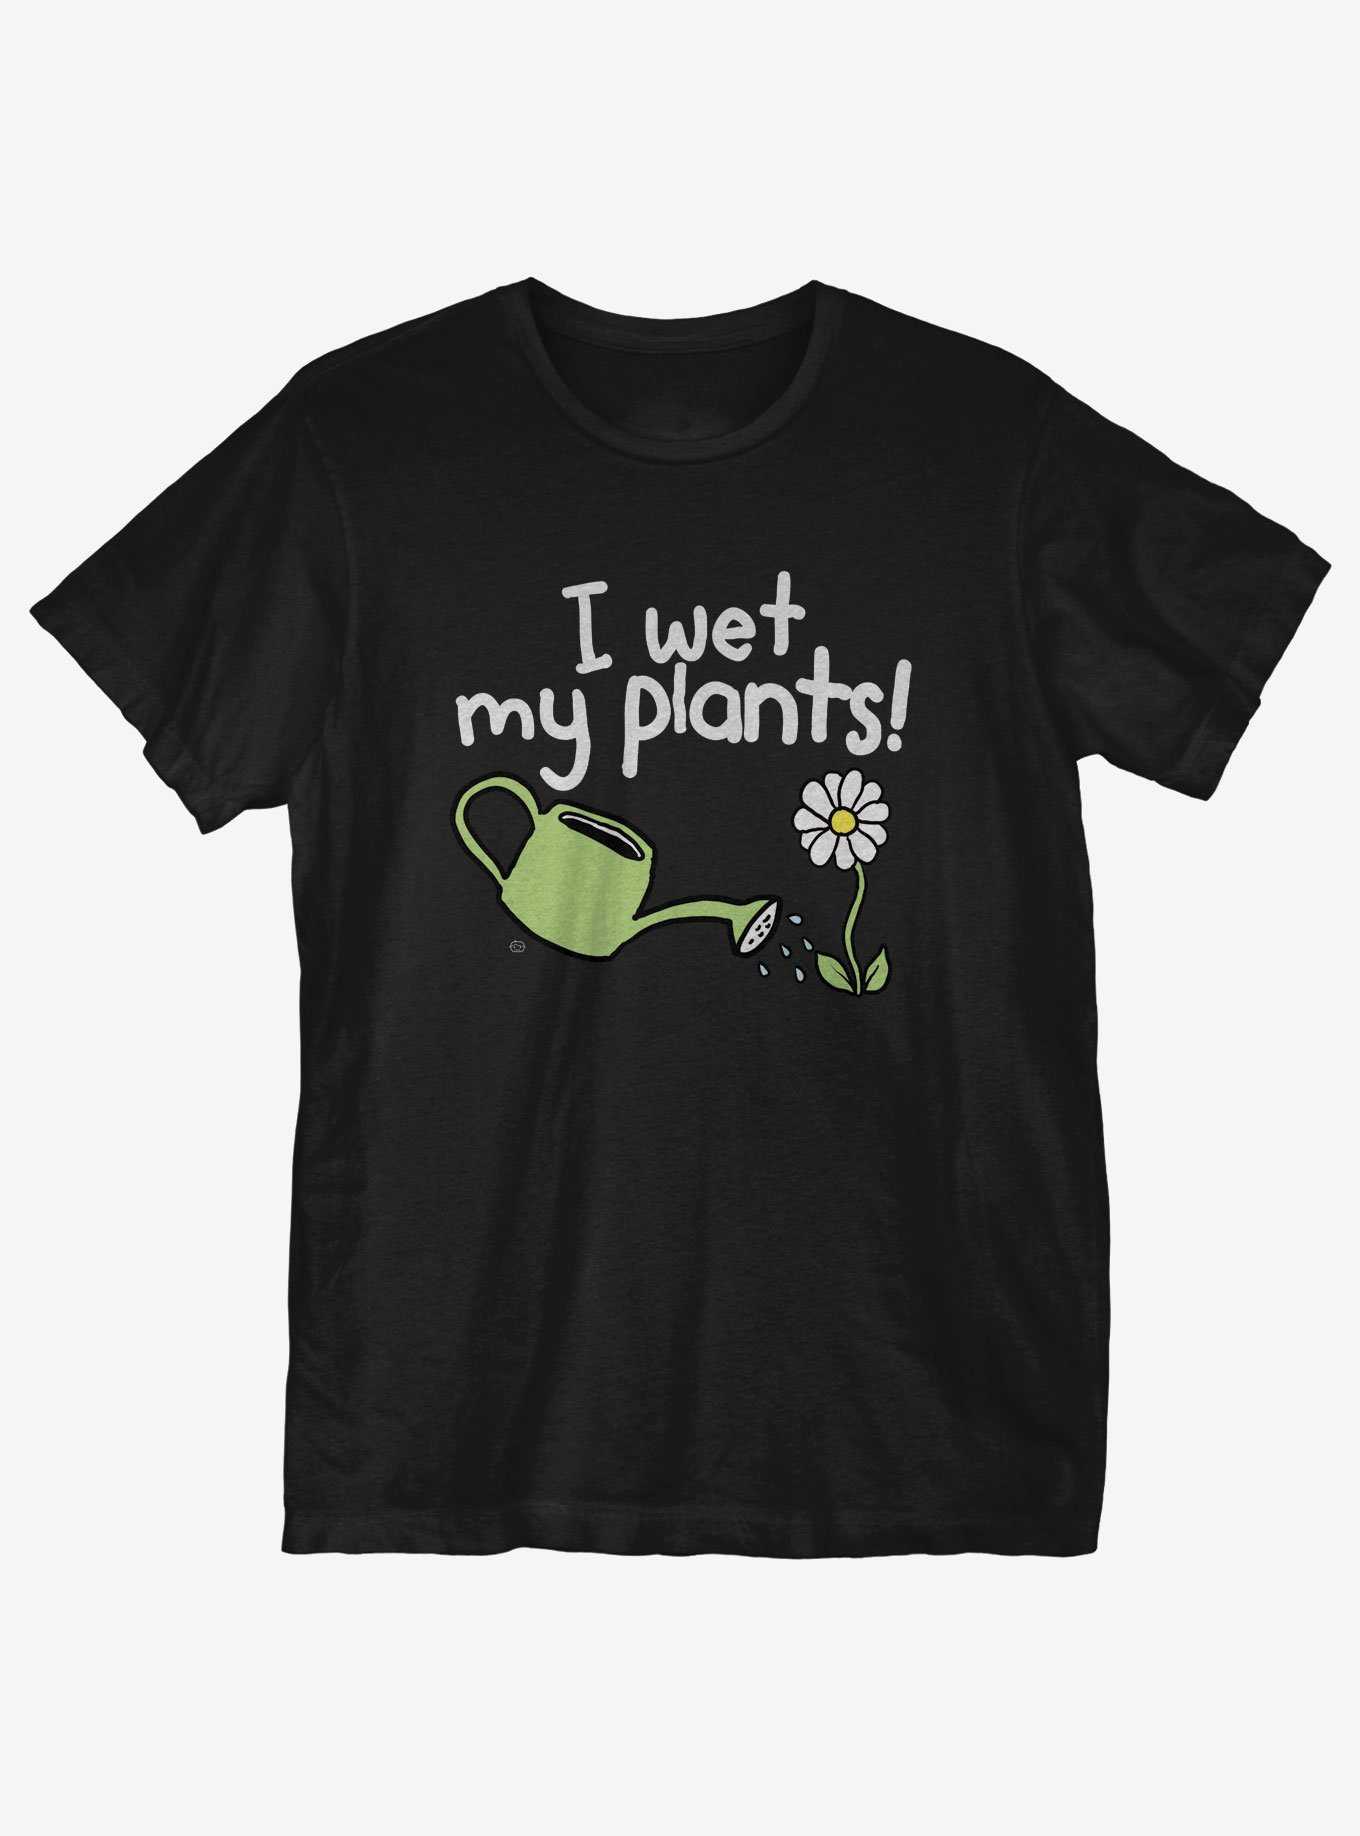 Wet my Plants T-Shirt, , hi-res